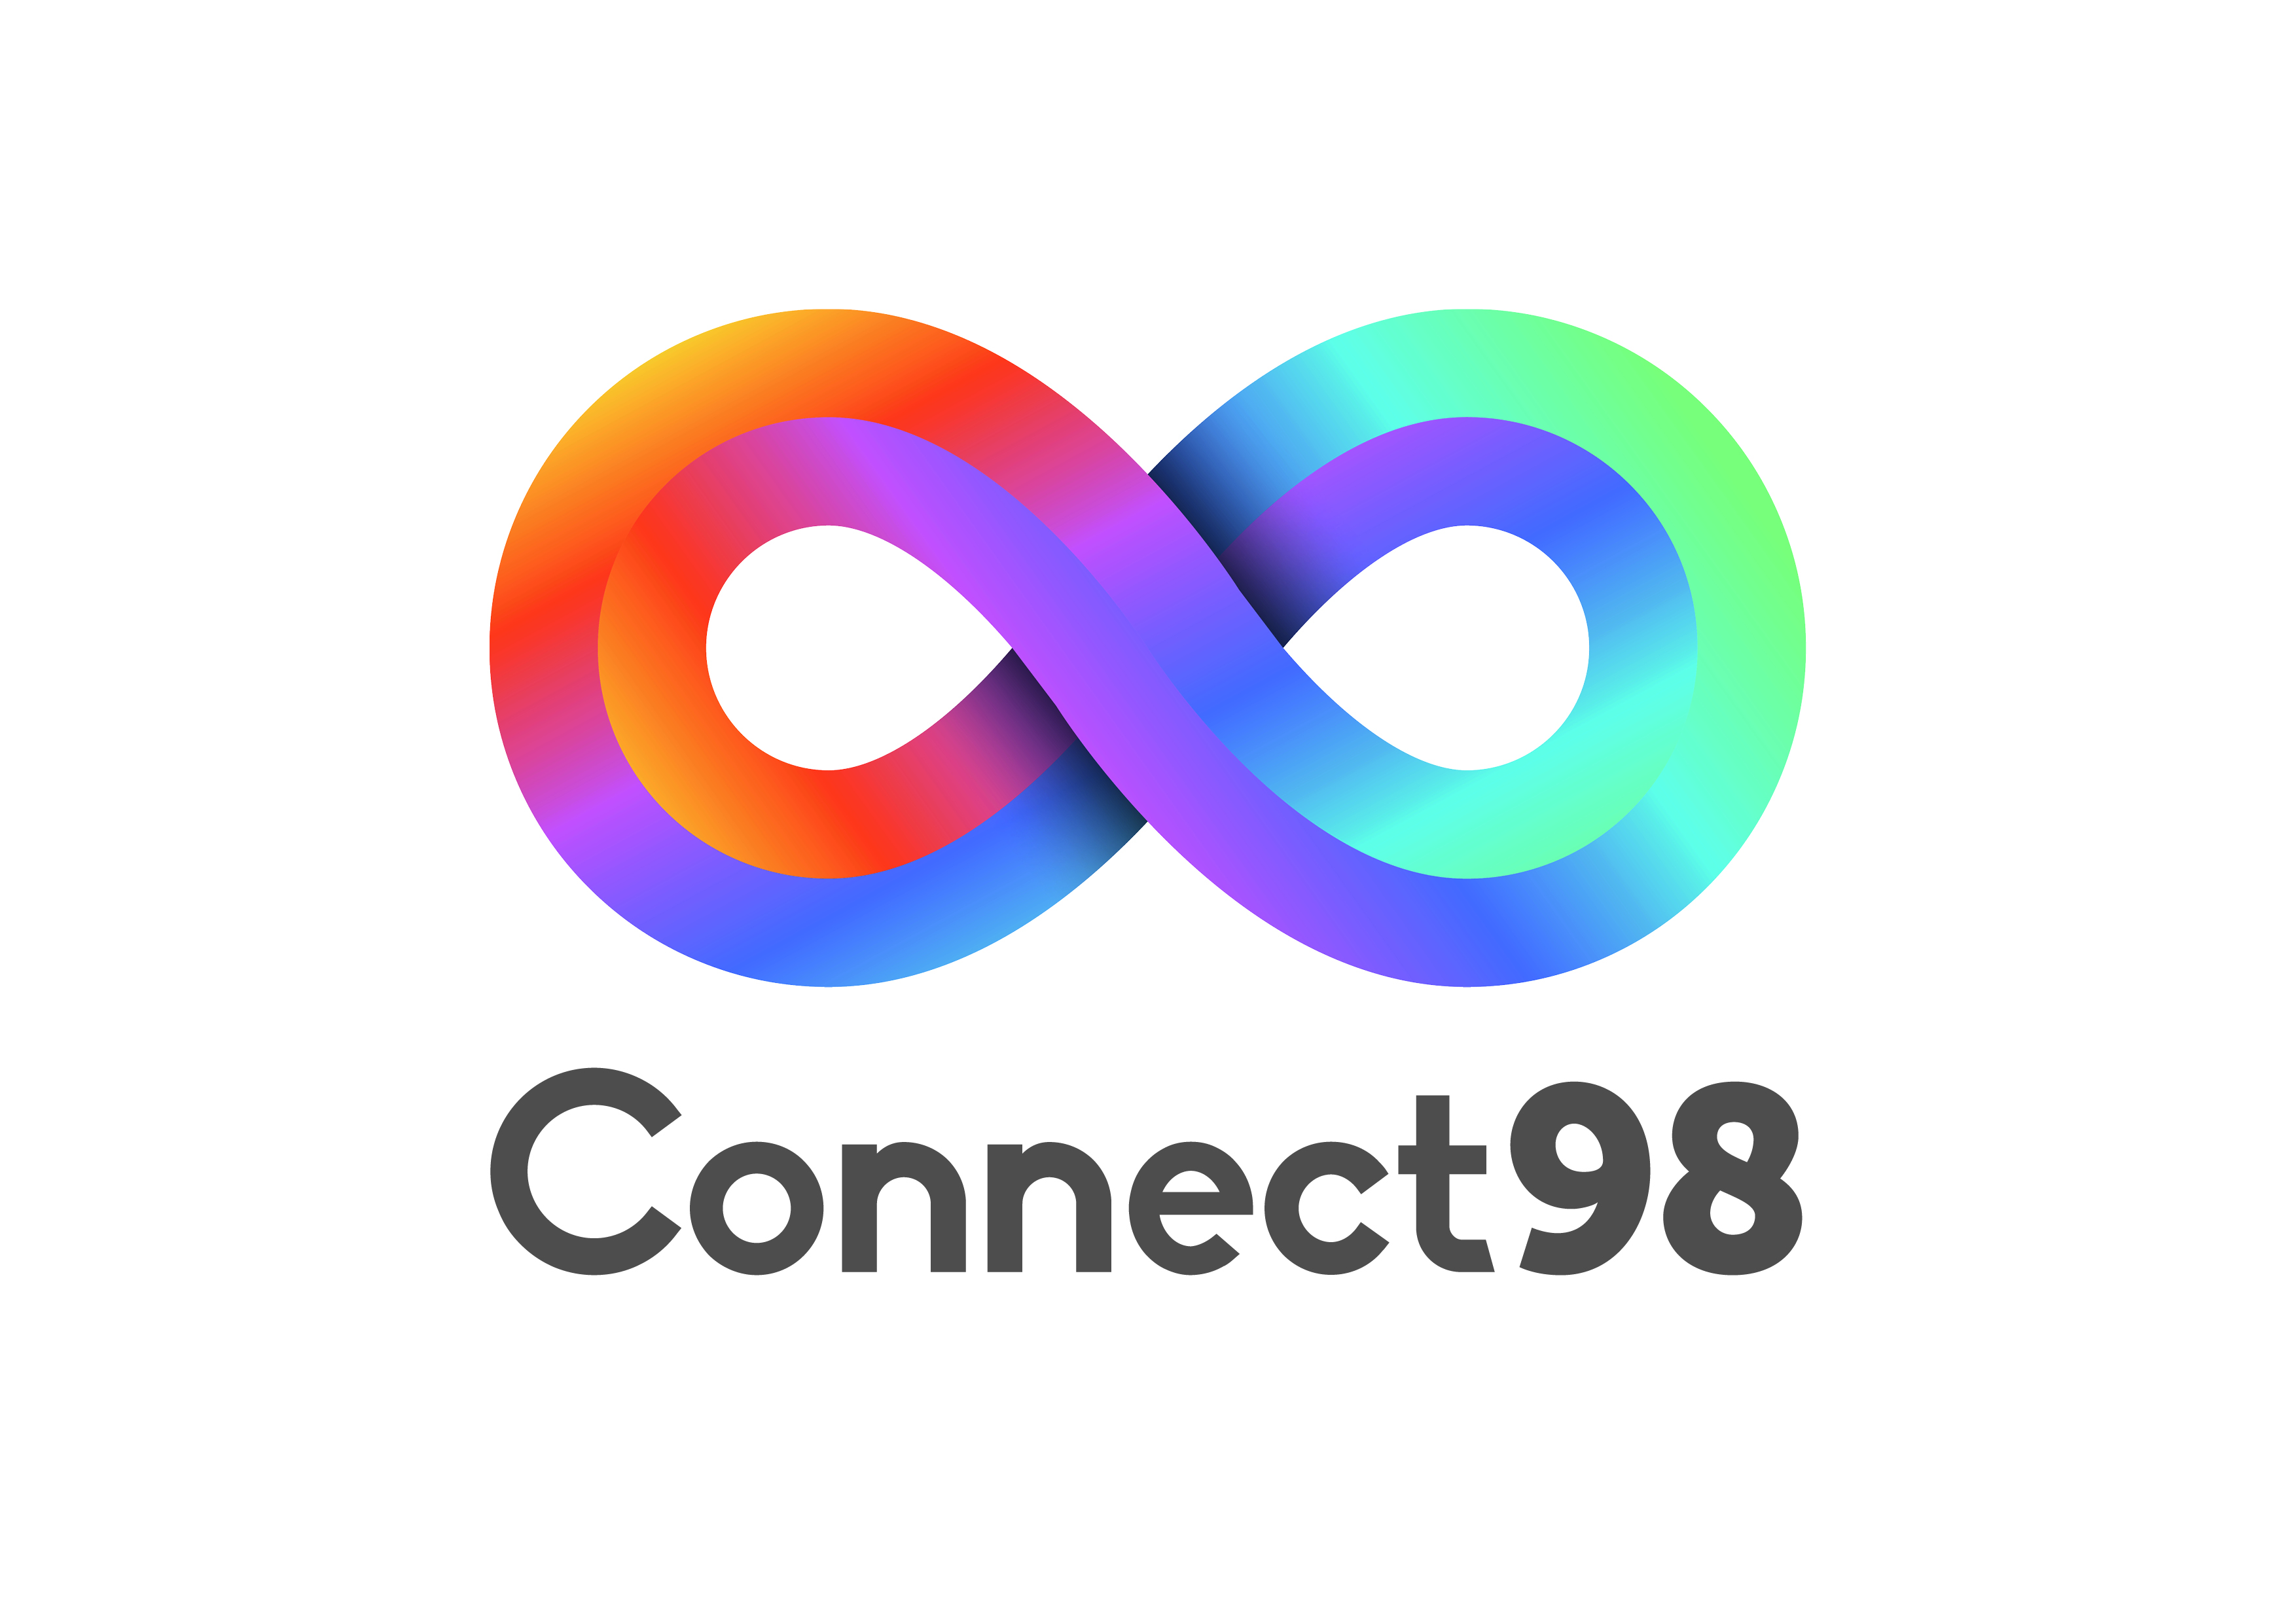 Connect98 Ltd